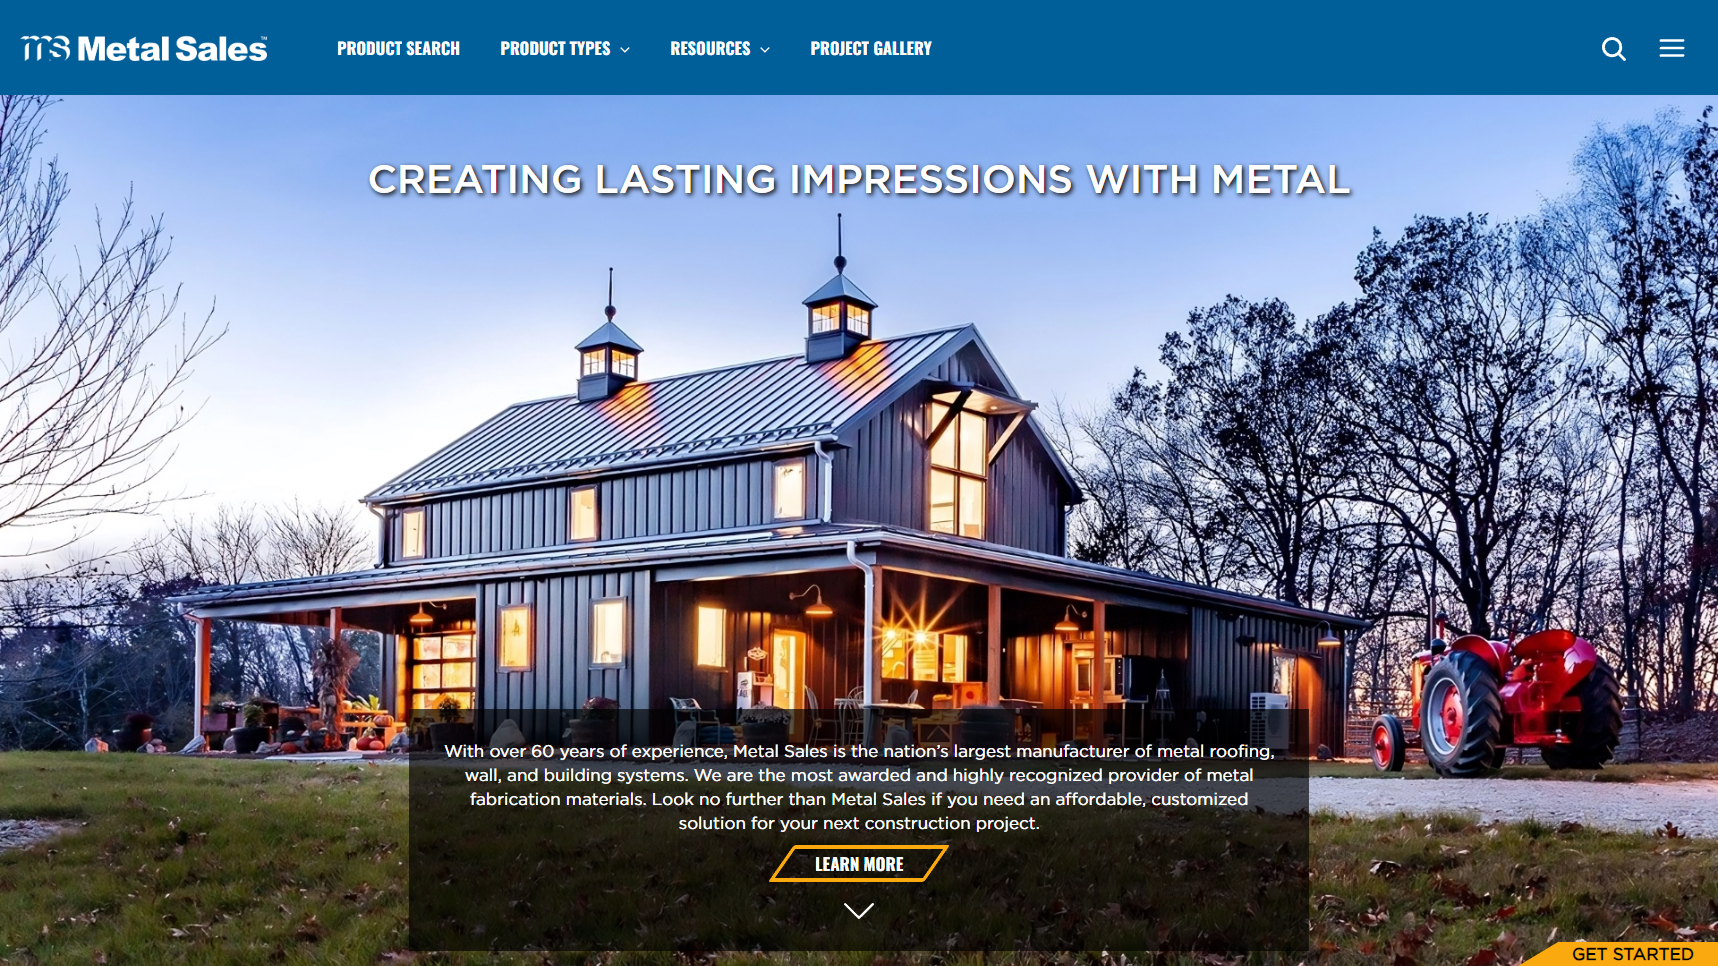 Metal Sales Manufacturing Corporation - Corrugated Metal Sheet Manufacturer